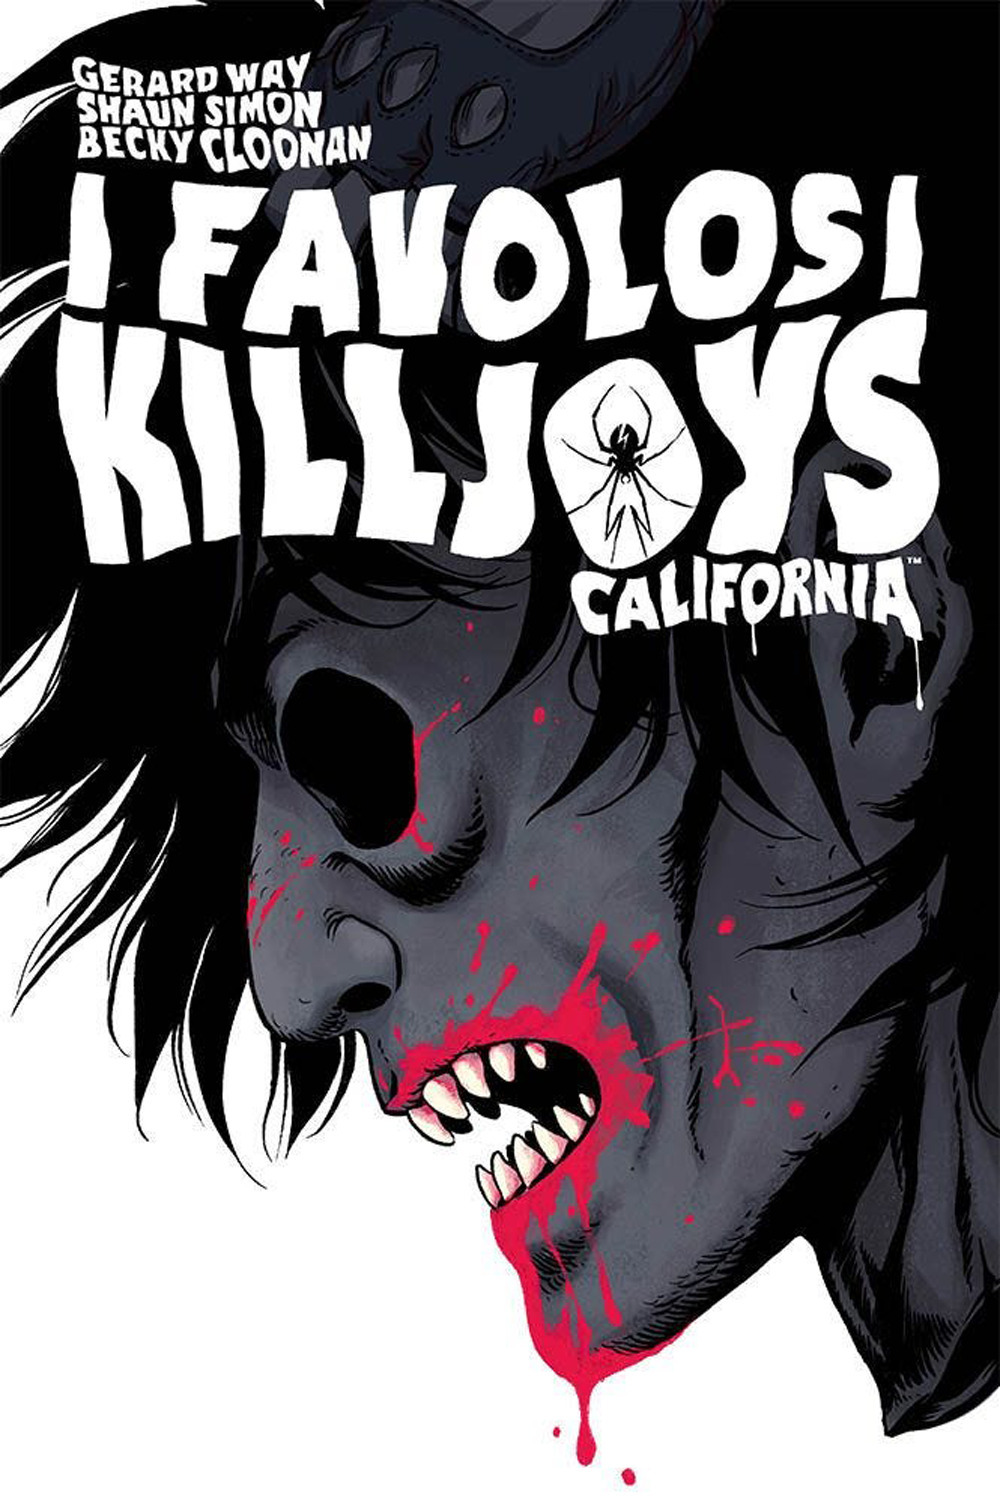 California. I favolosi Killjoys. Nuova ediz.